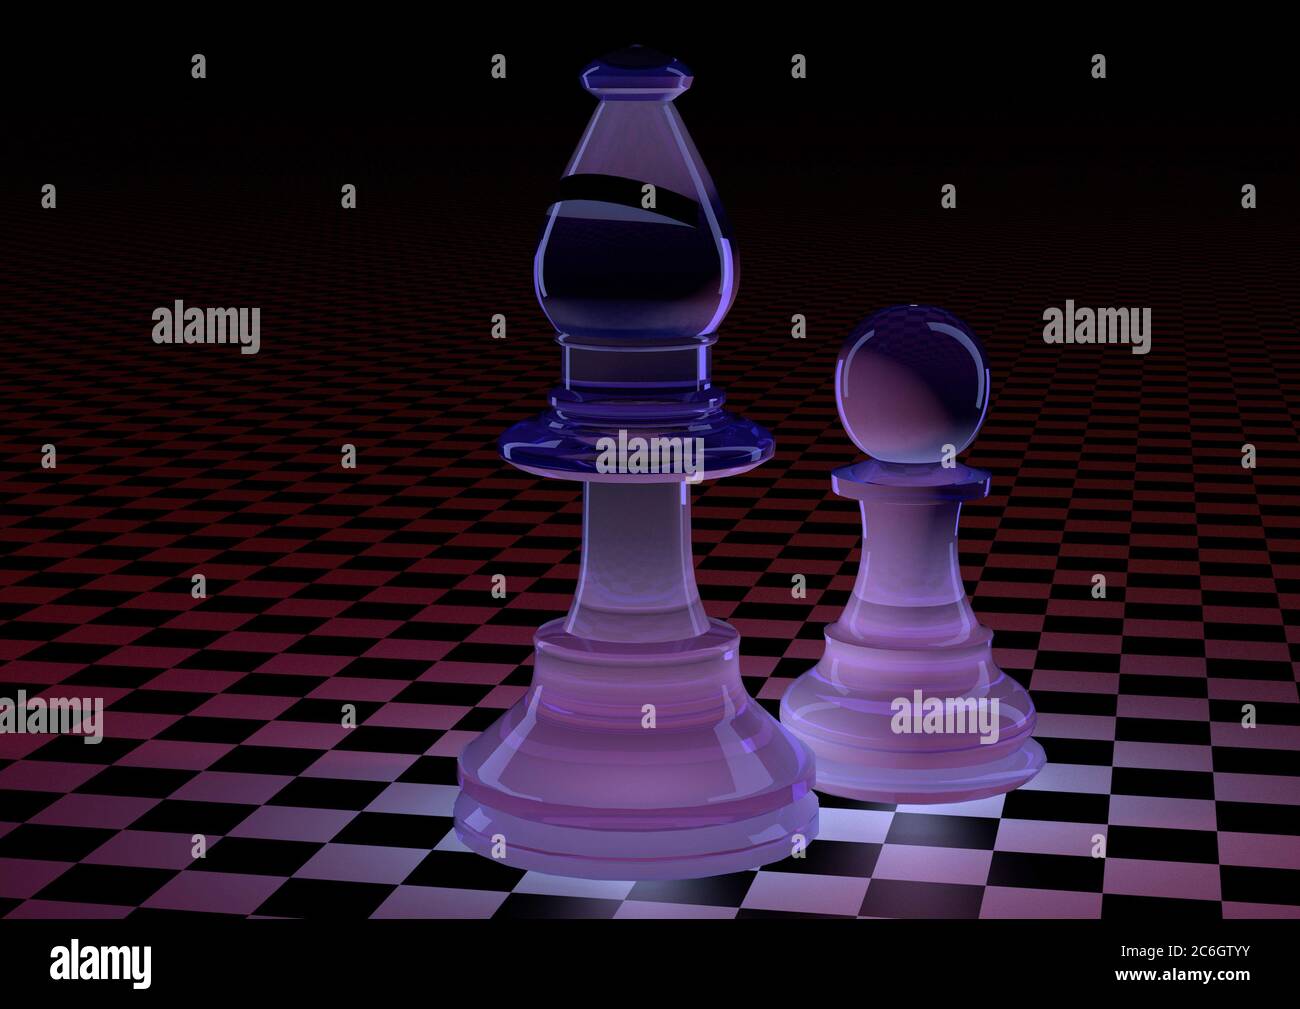 Le jeu d'échecs, une histoire de symboles - L'éléphant